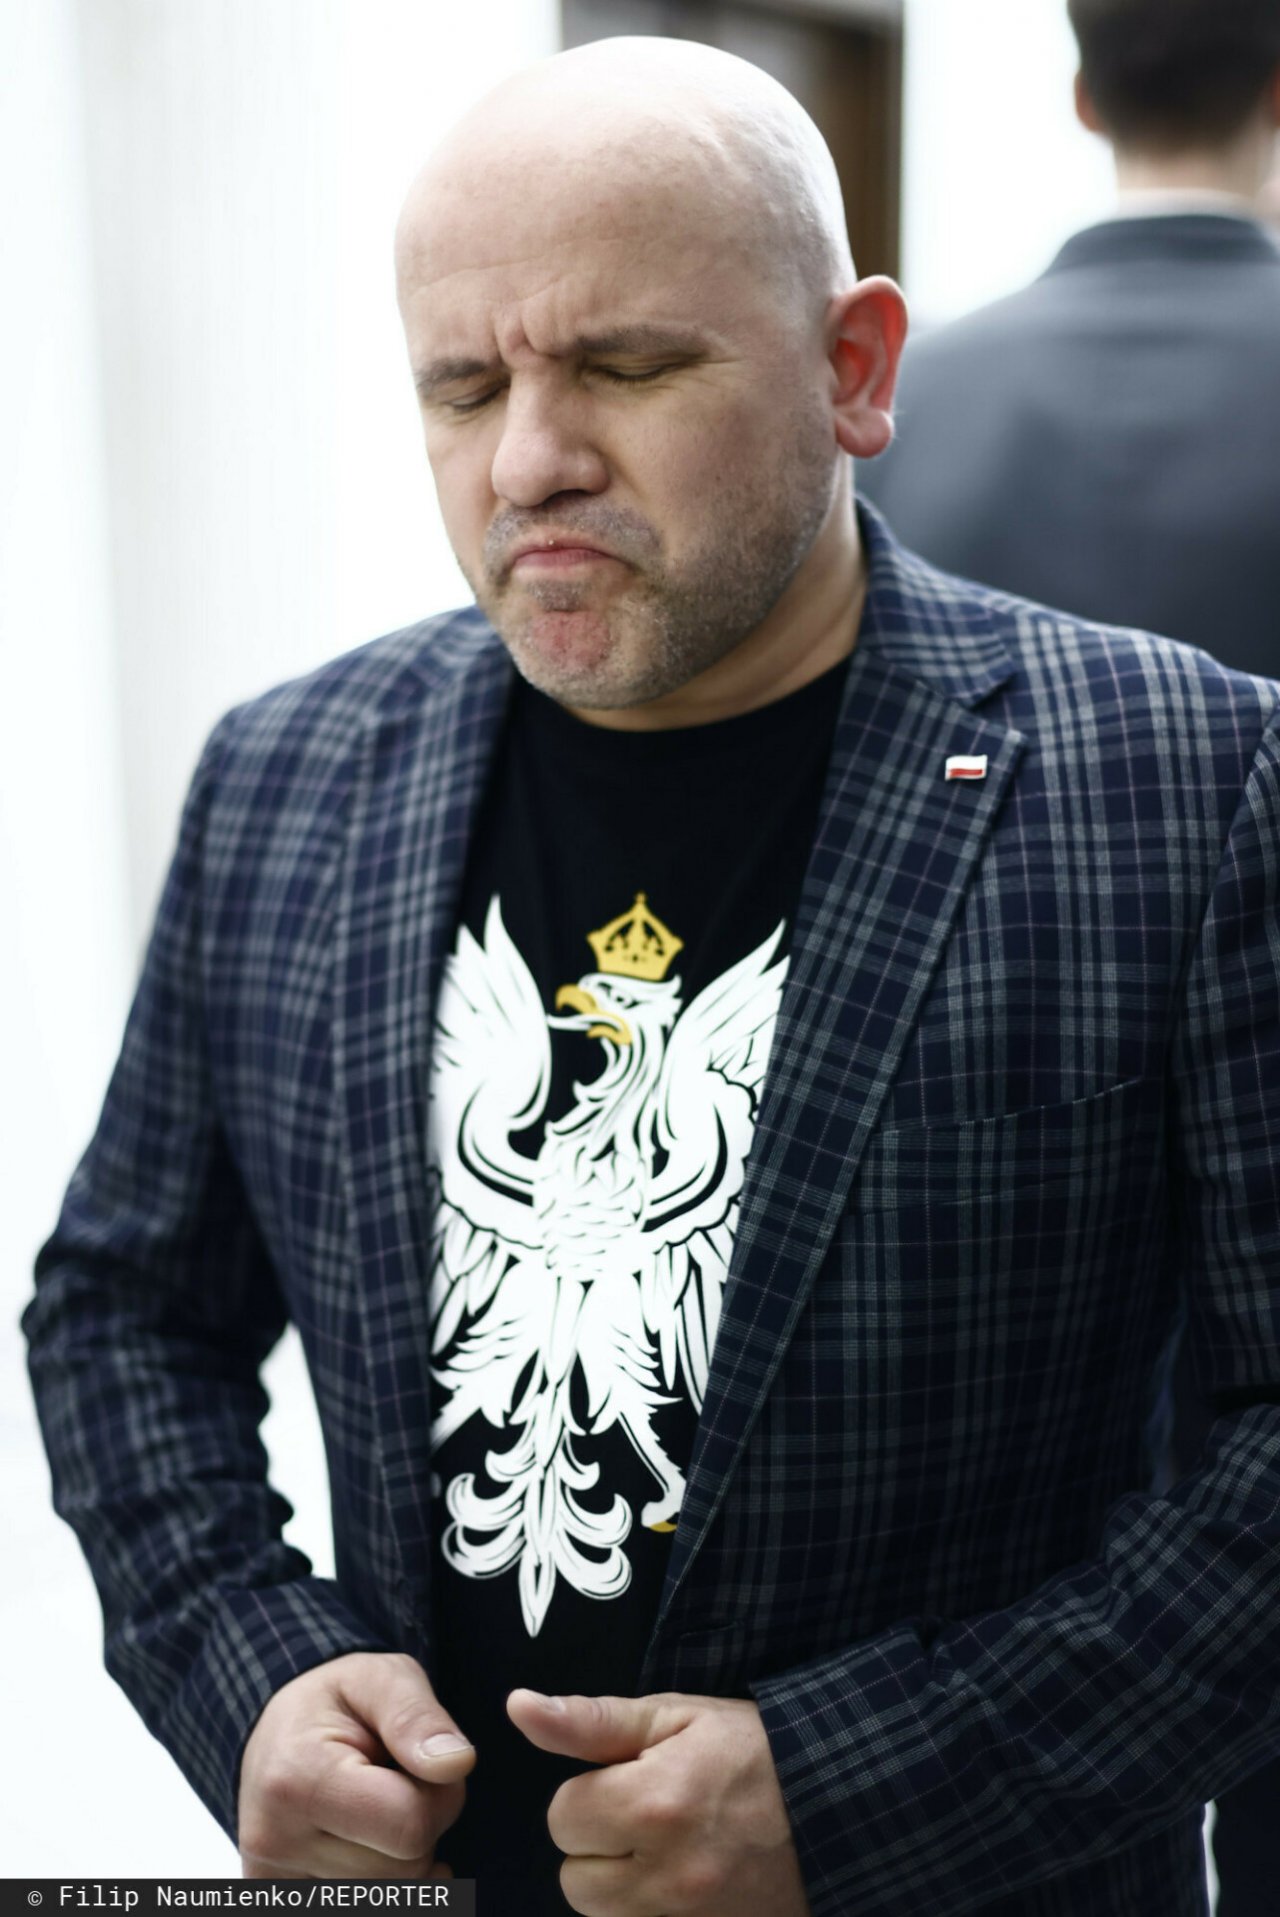 Mariusz Gosek w koszulce z orłem, skrzywiona mina